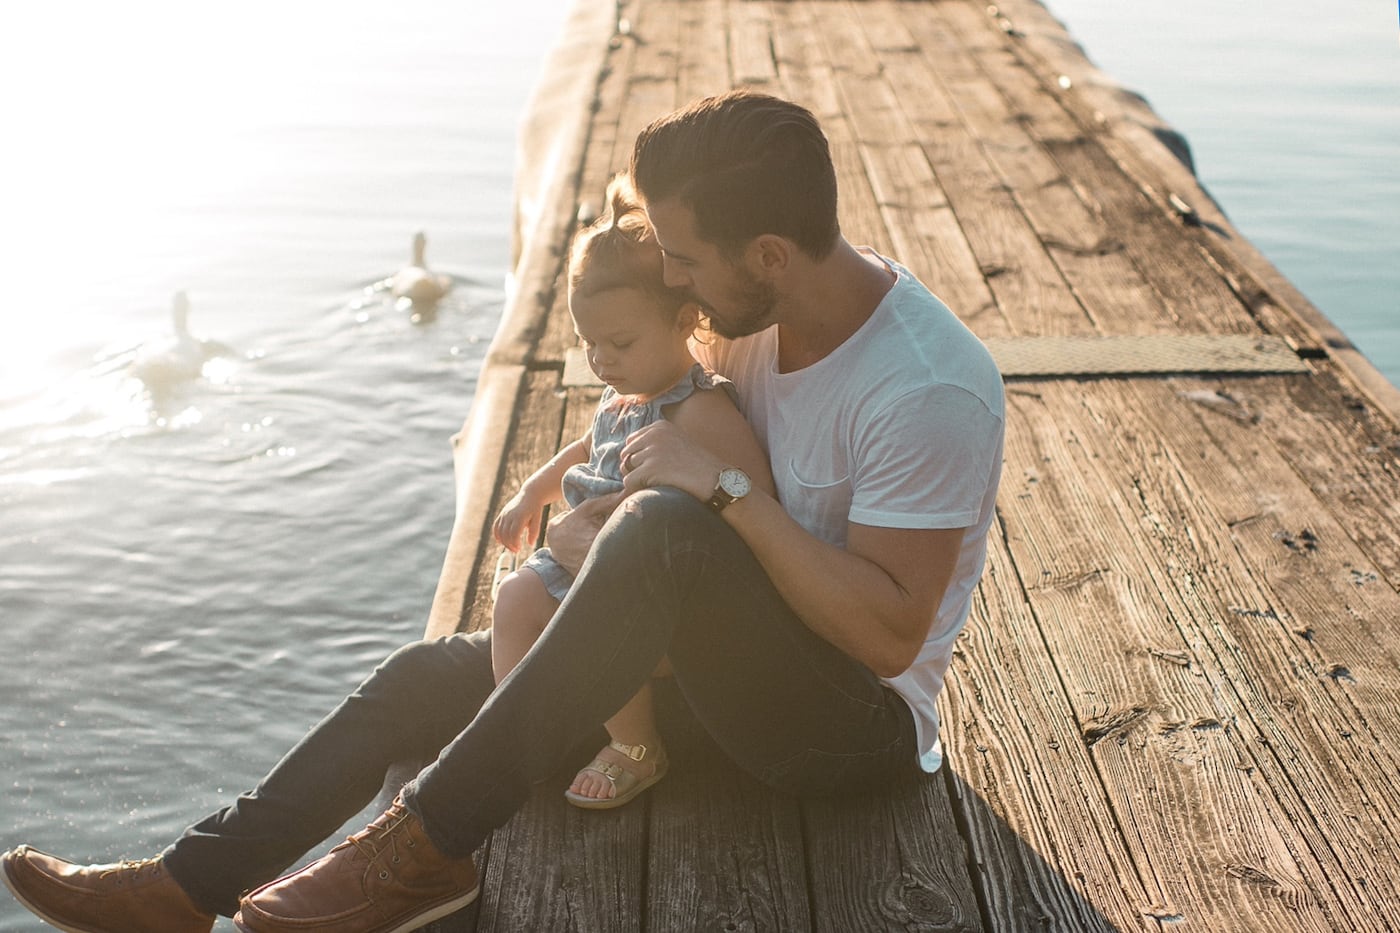 Père s’asseyant avec sa fille d’enfant en bas âge sur le dock sur l’eau.